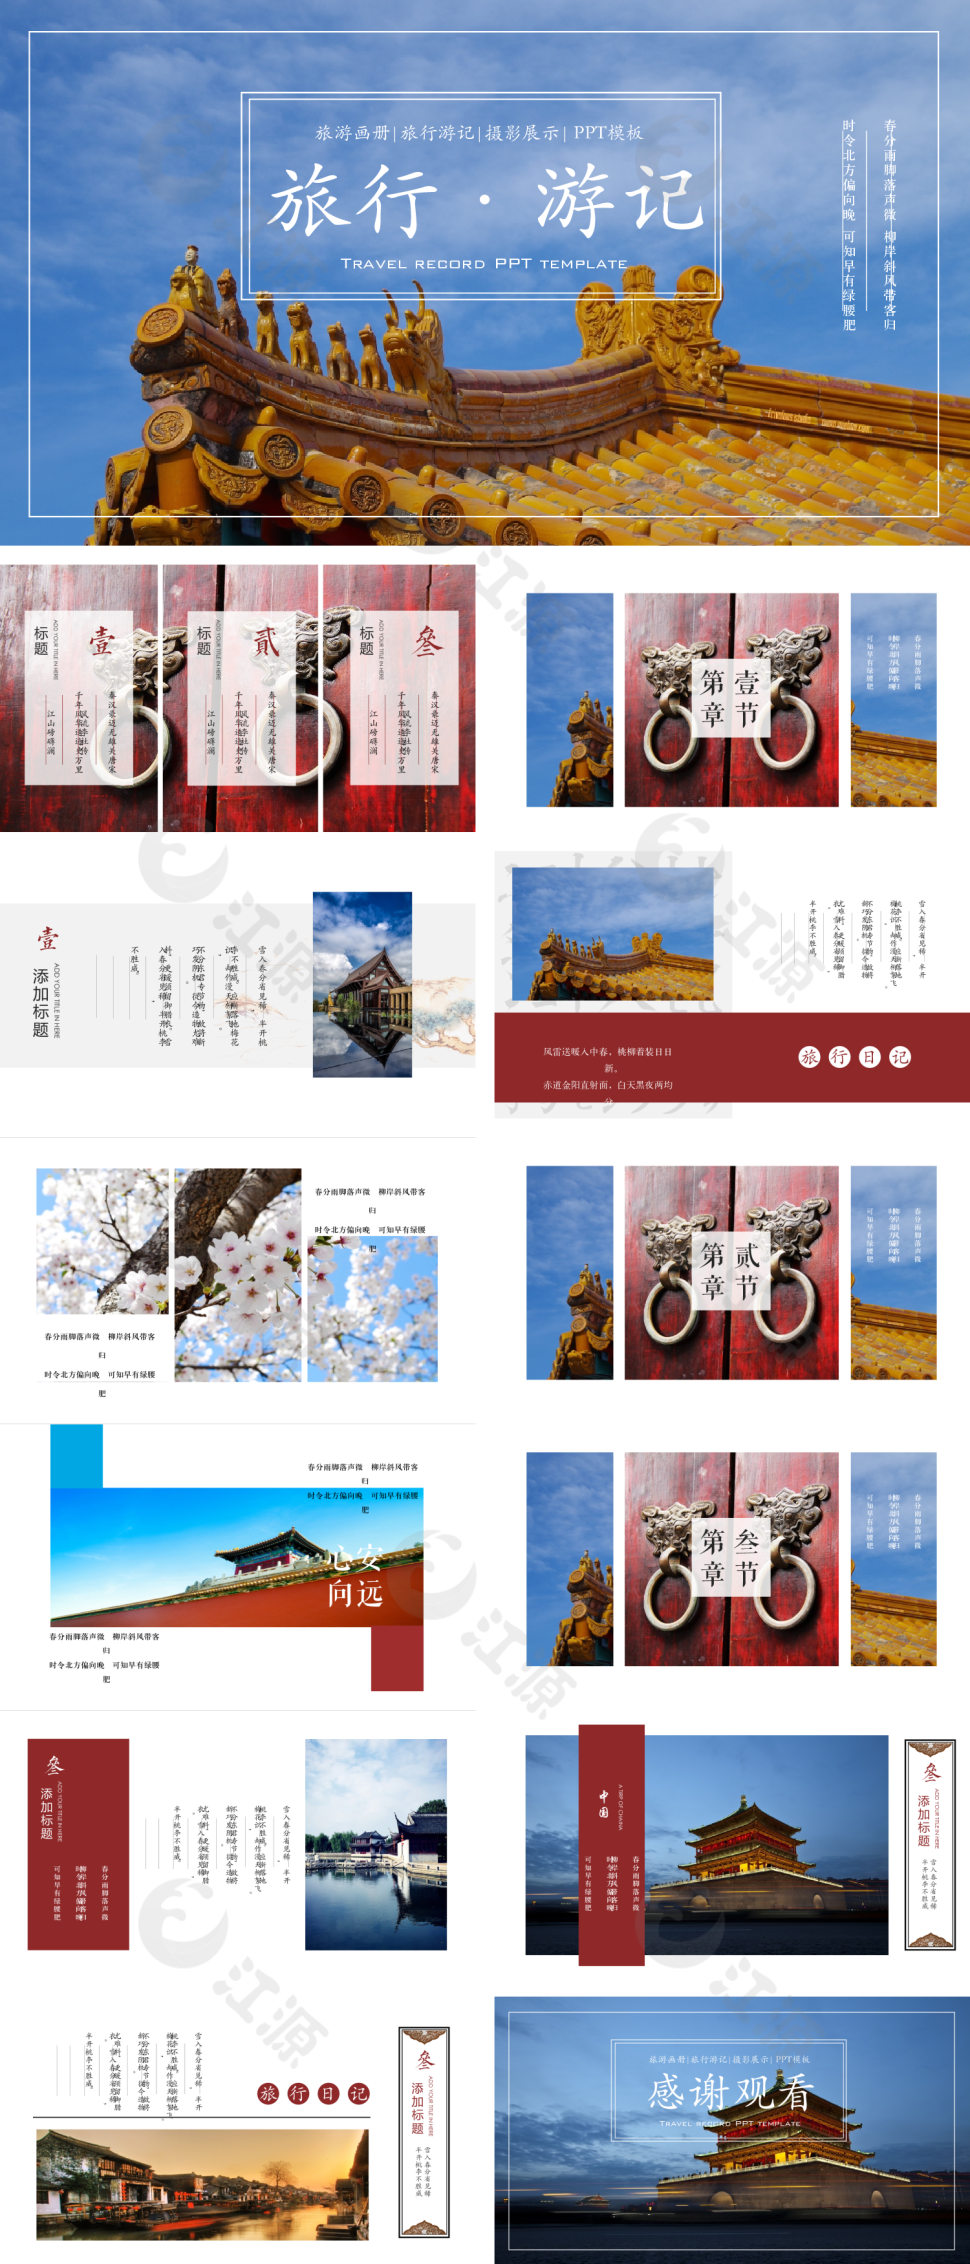 旅游画册旅行游记摄影展示PPT模板